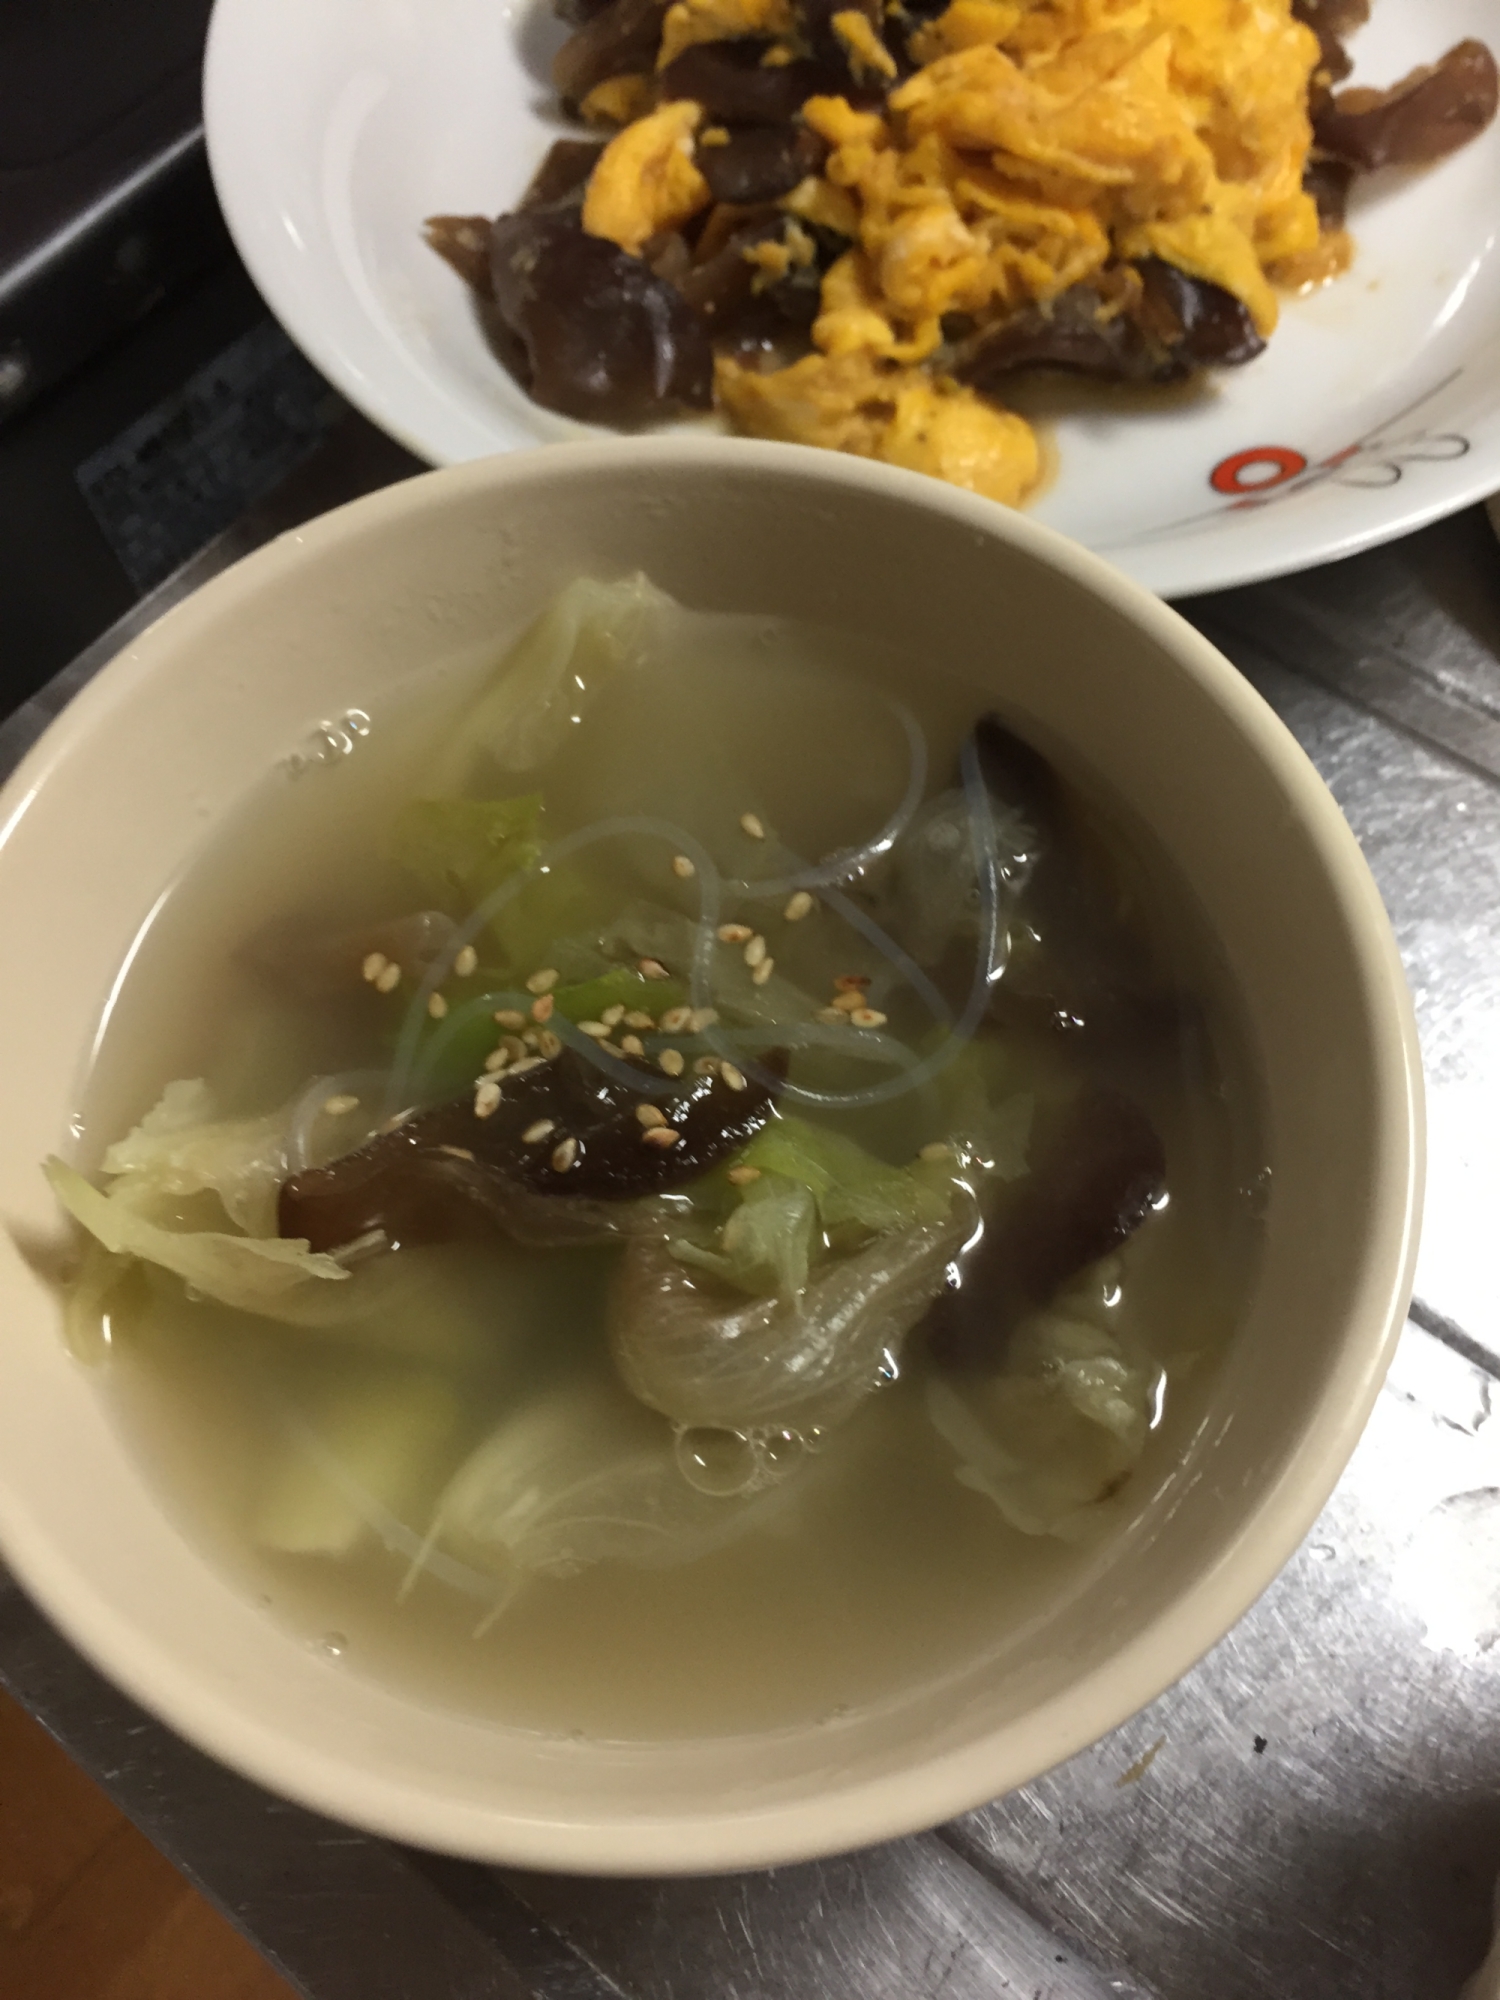 キクラゲとレタスの中華風スープ